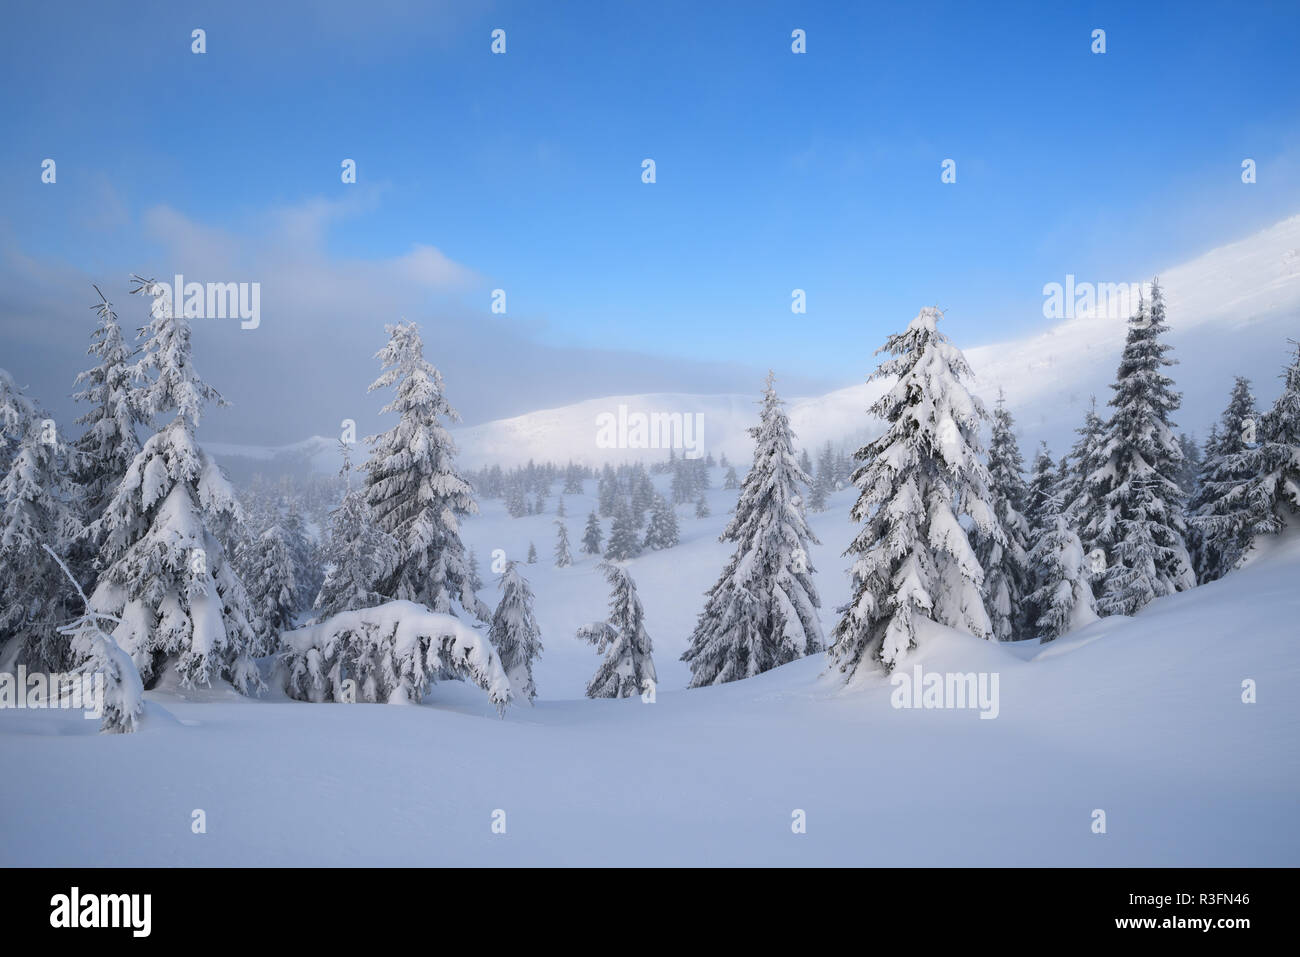 Paysage d'hiver avec forêt de sapins enneigés dans les montagnes. Jour Froid avec ciel bleu Banque D'Images